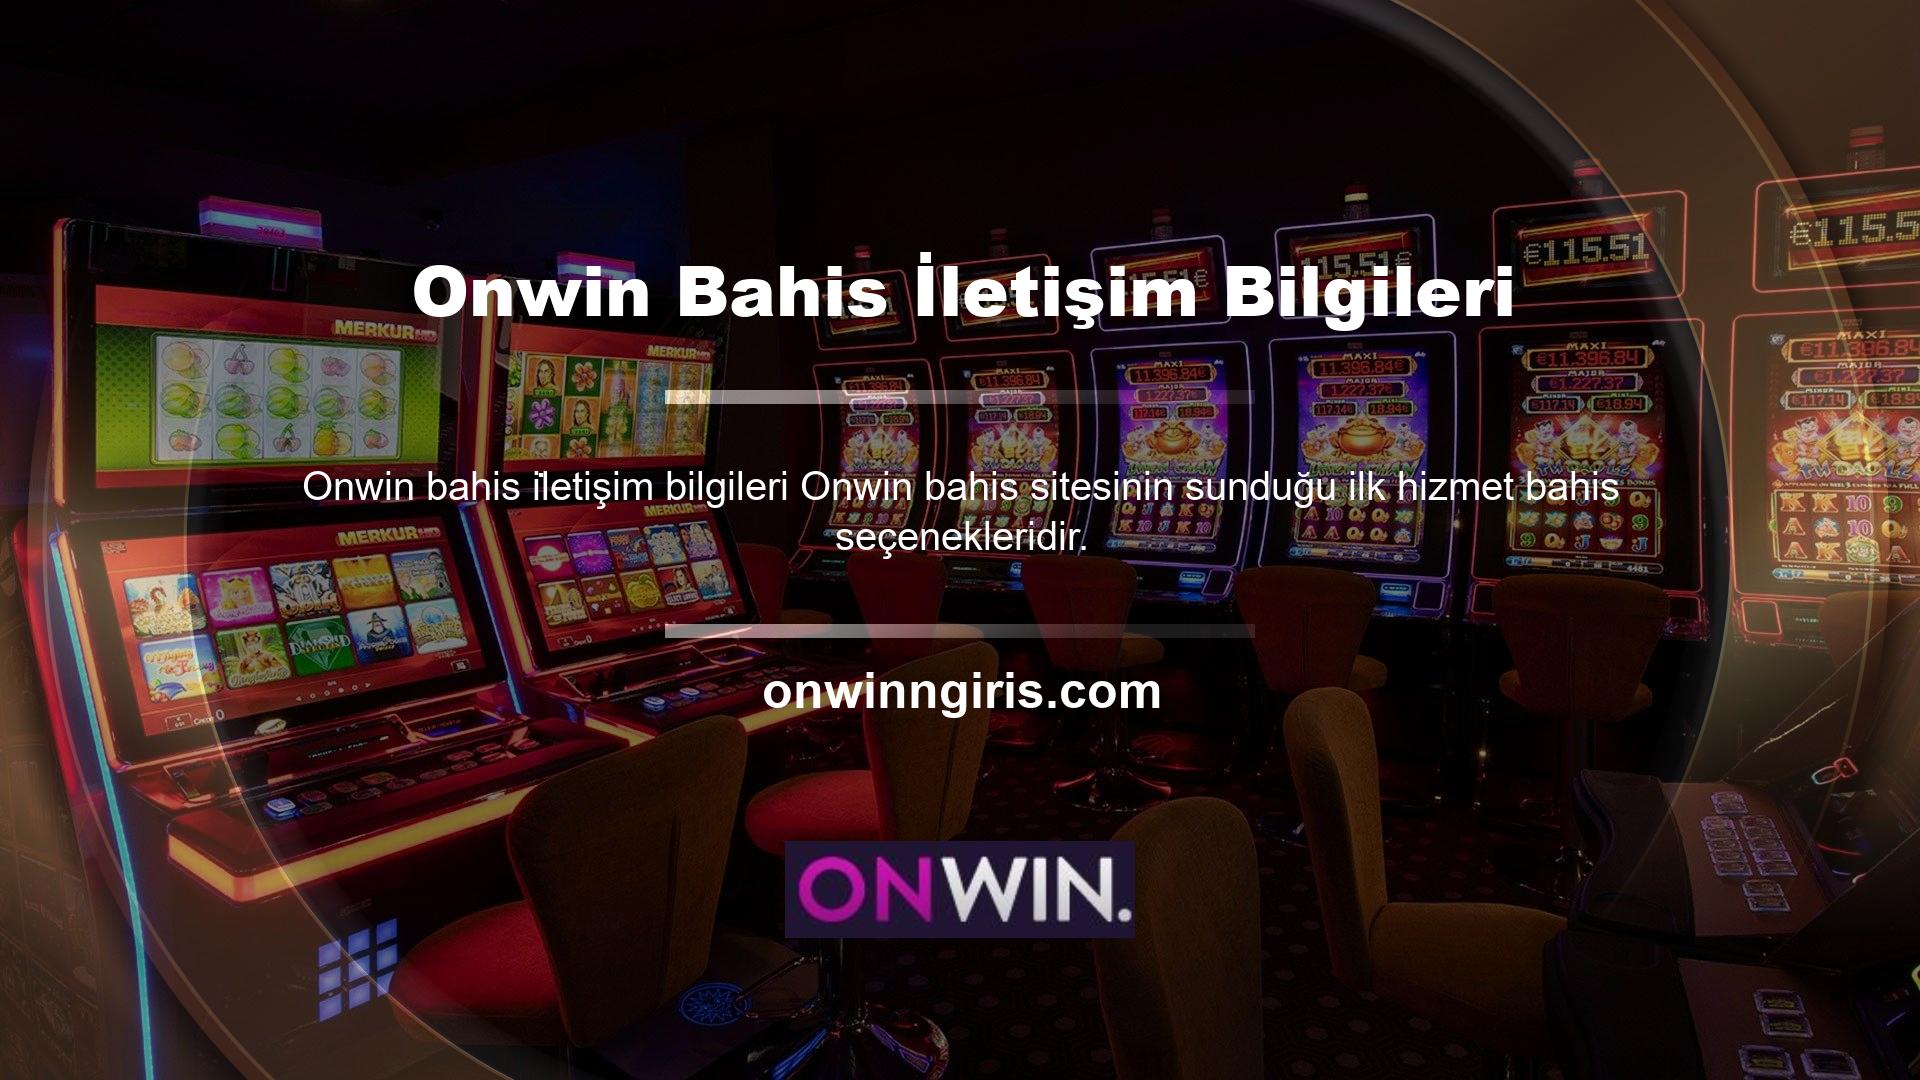 Onwin Casino'da canlı ve canlı spor bahislerini sayfanın üst kısmında yer alan bu bahis seçeneklerinde bulabilirsiniz